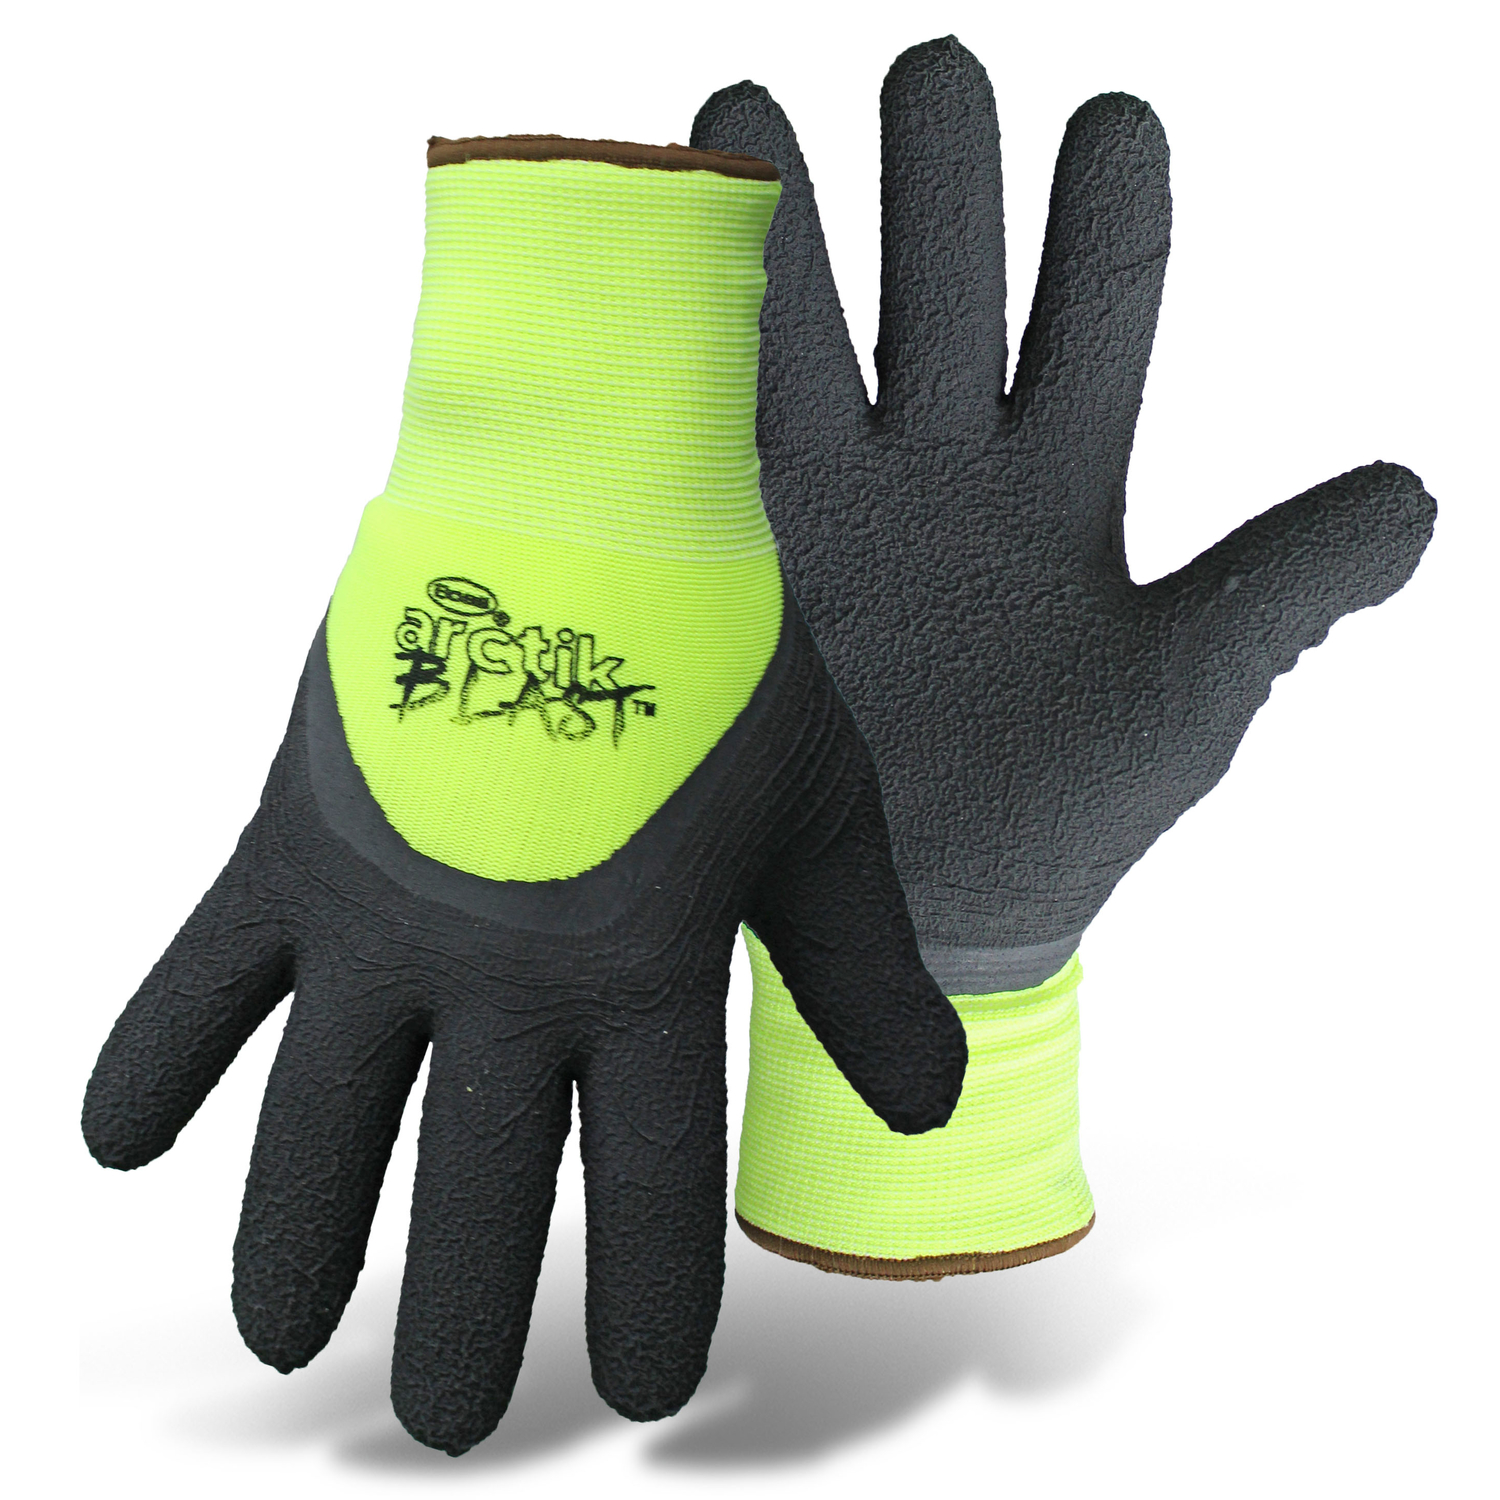 Wonder Grip WG510HVXL Extra Large Orange High Visibility Nitrile Palm Gloves  